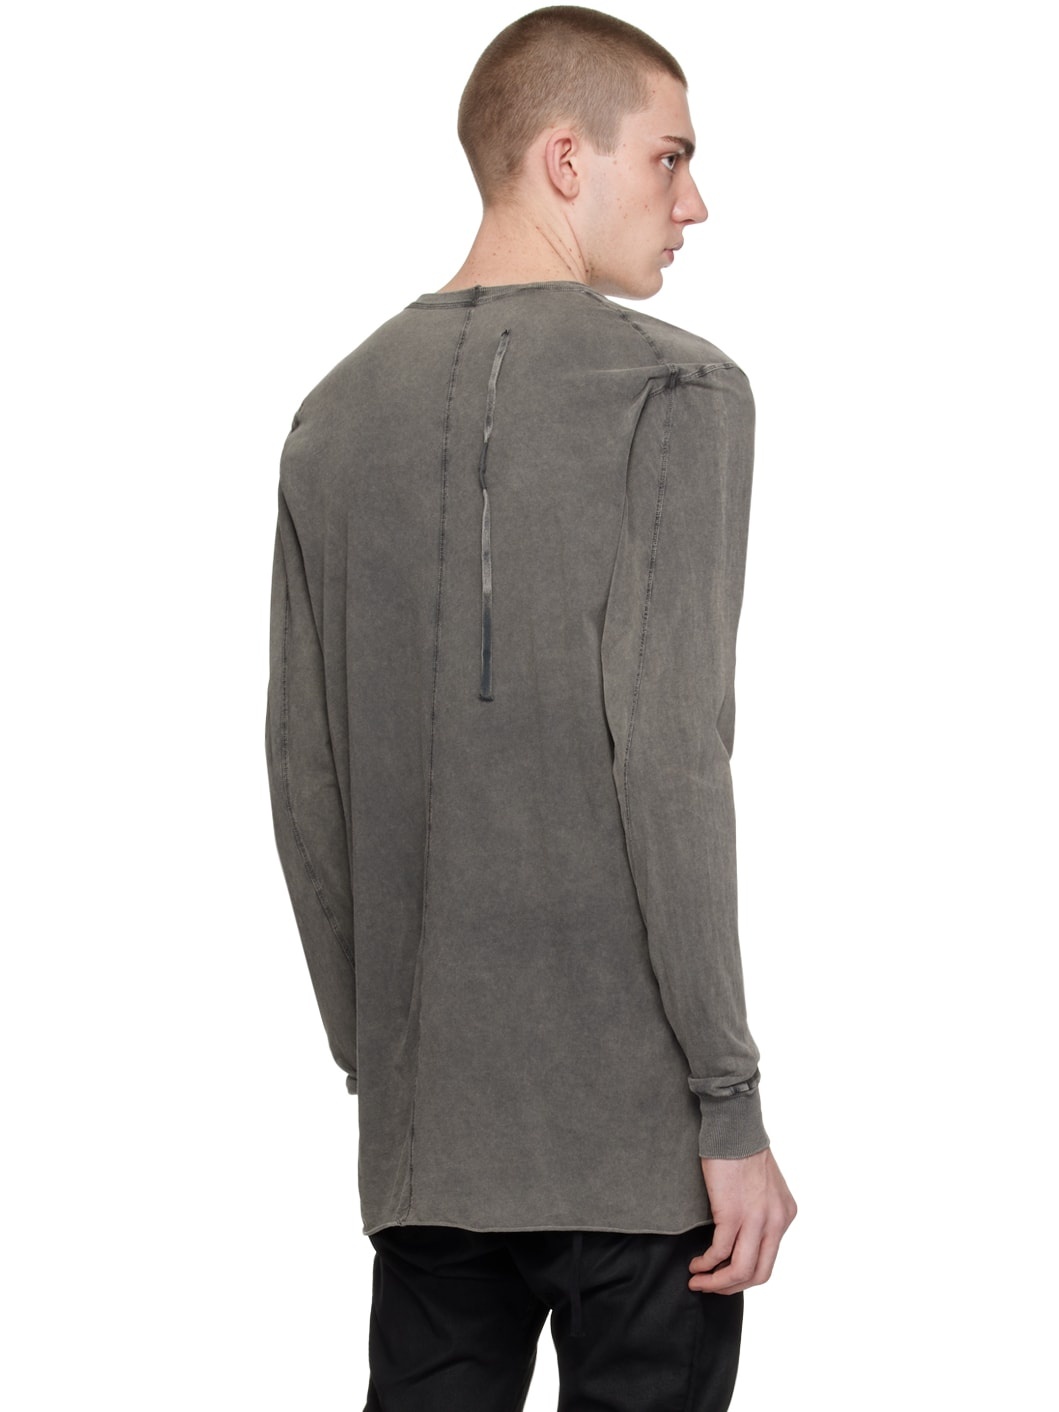 Gray LS1B Long Sleeve T-Shirt - 3